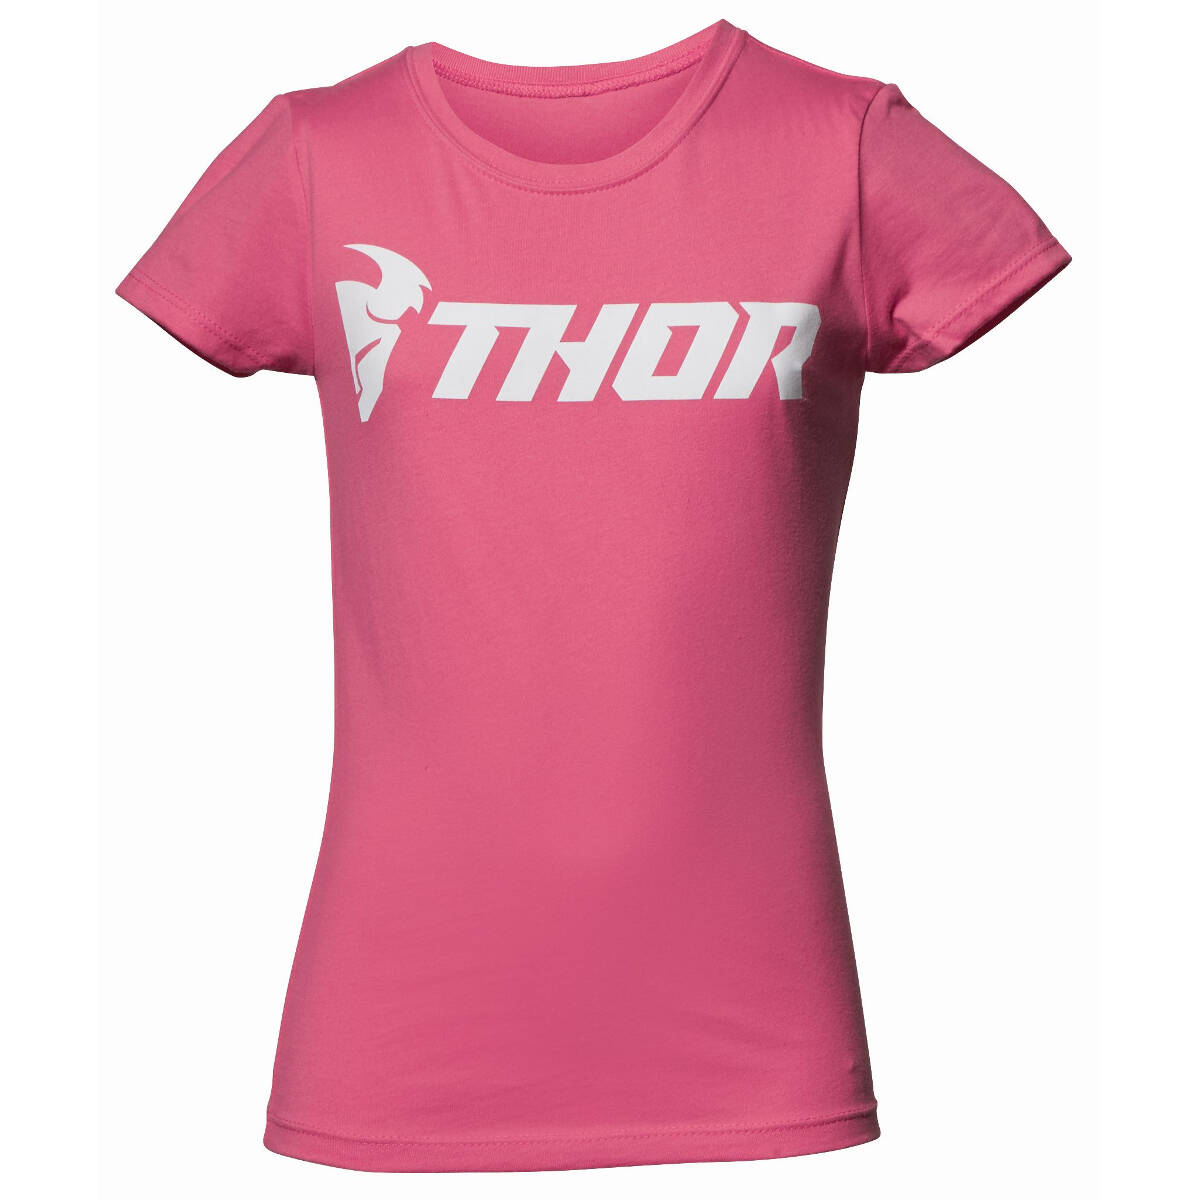 Thor Kids Girls T-Shirt Loud Pink